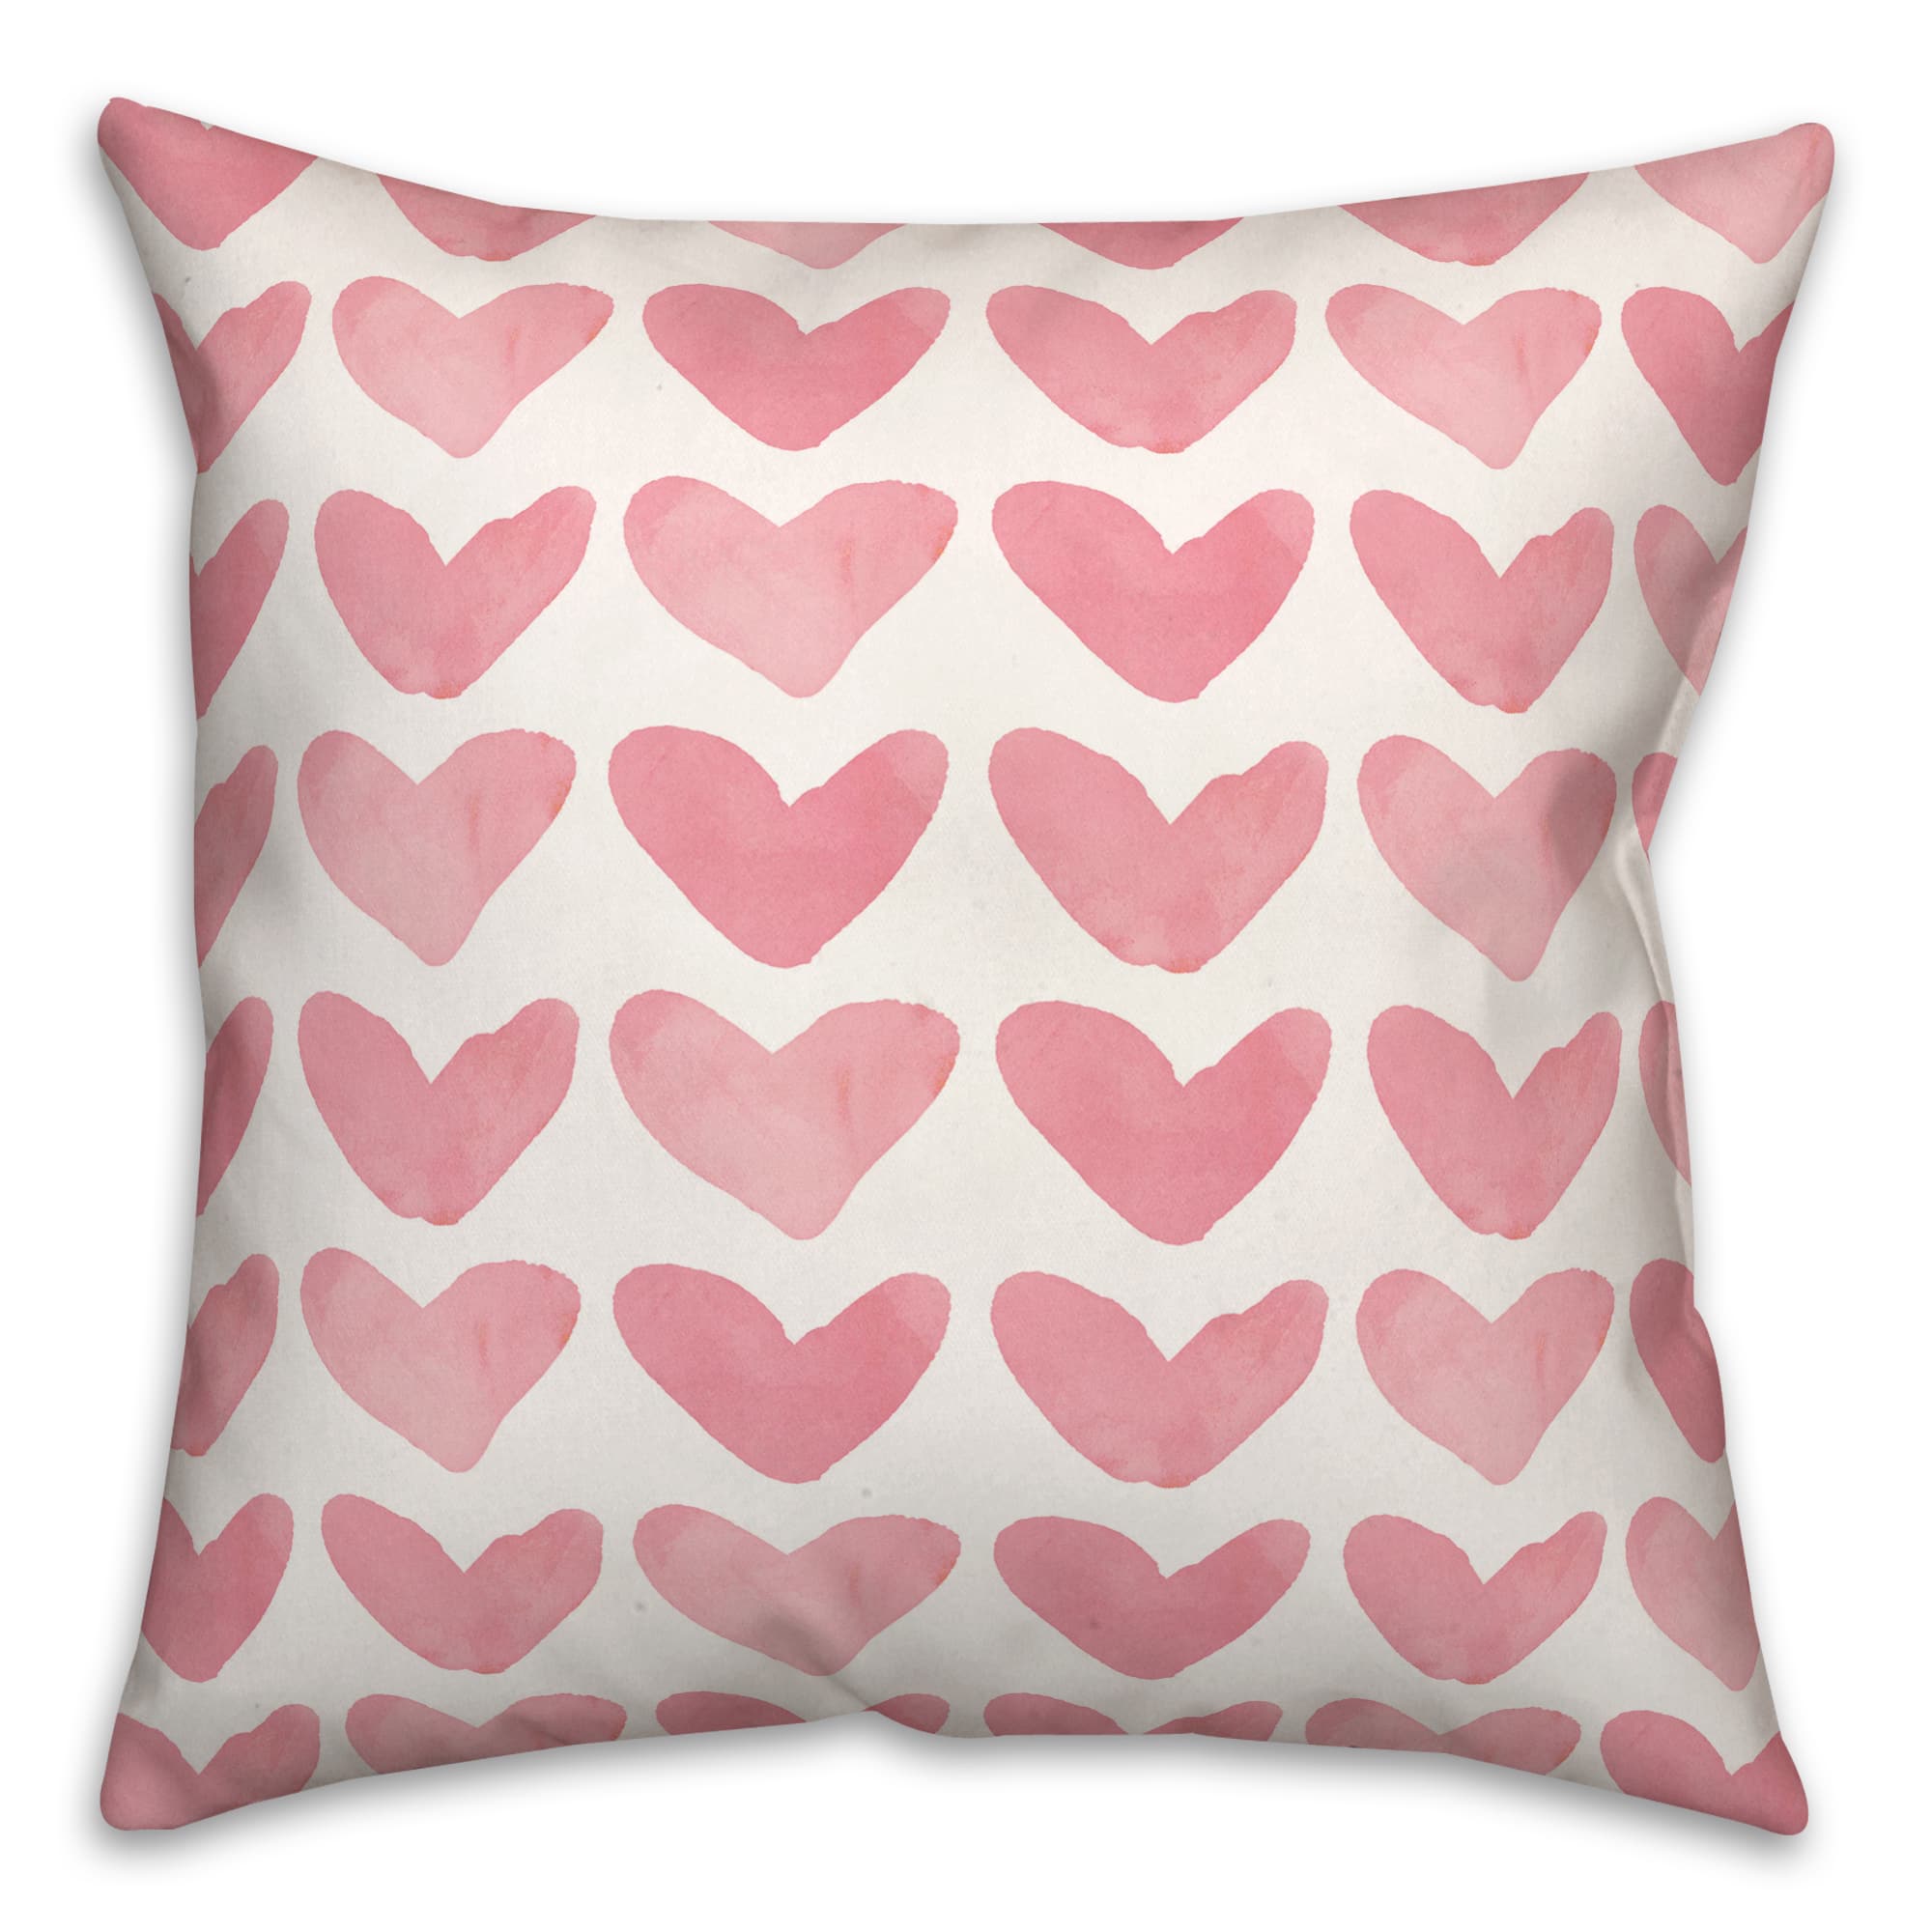 Watercolor Heart PatternThrow Pillow